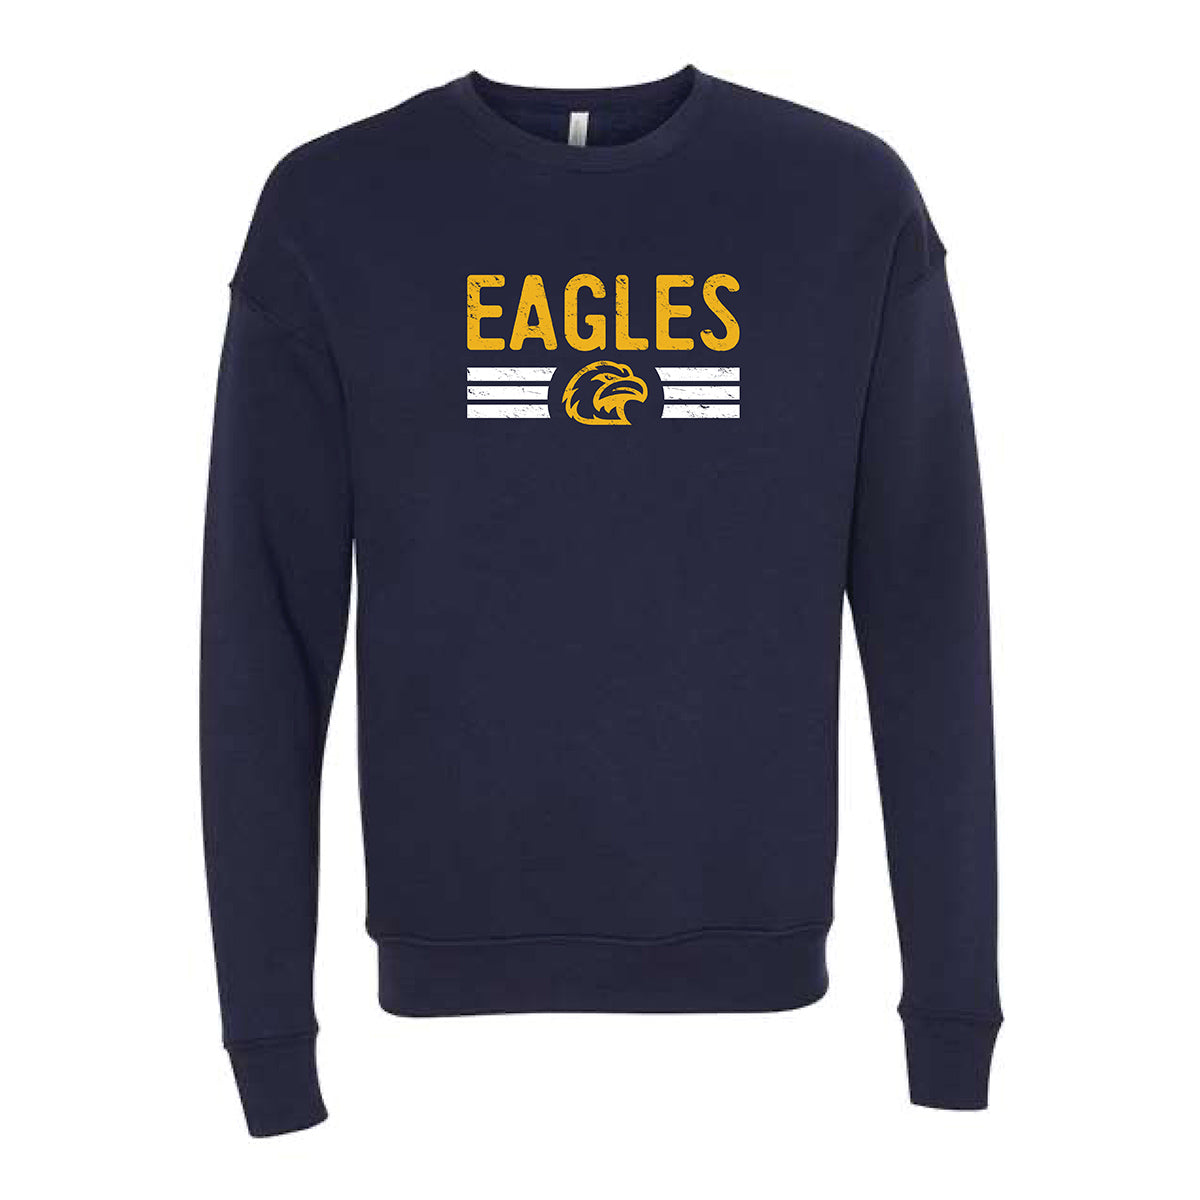 Eagles Crewneck Sweatshirt in Navy